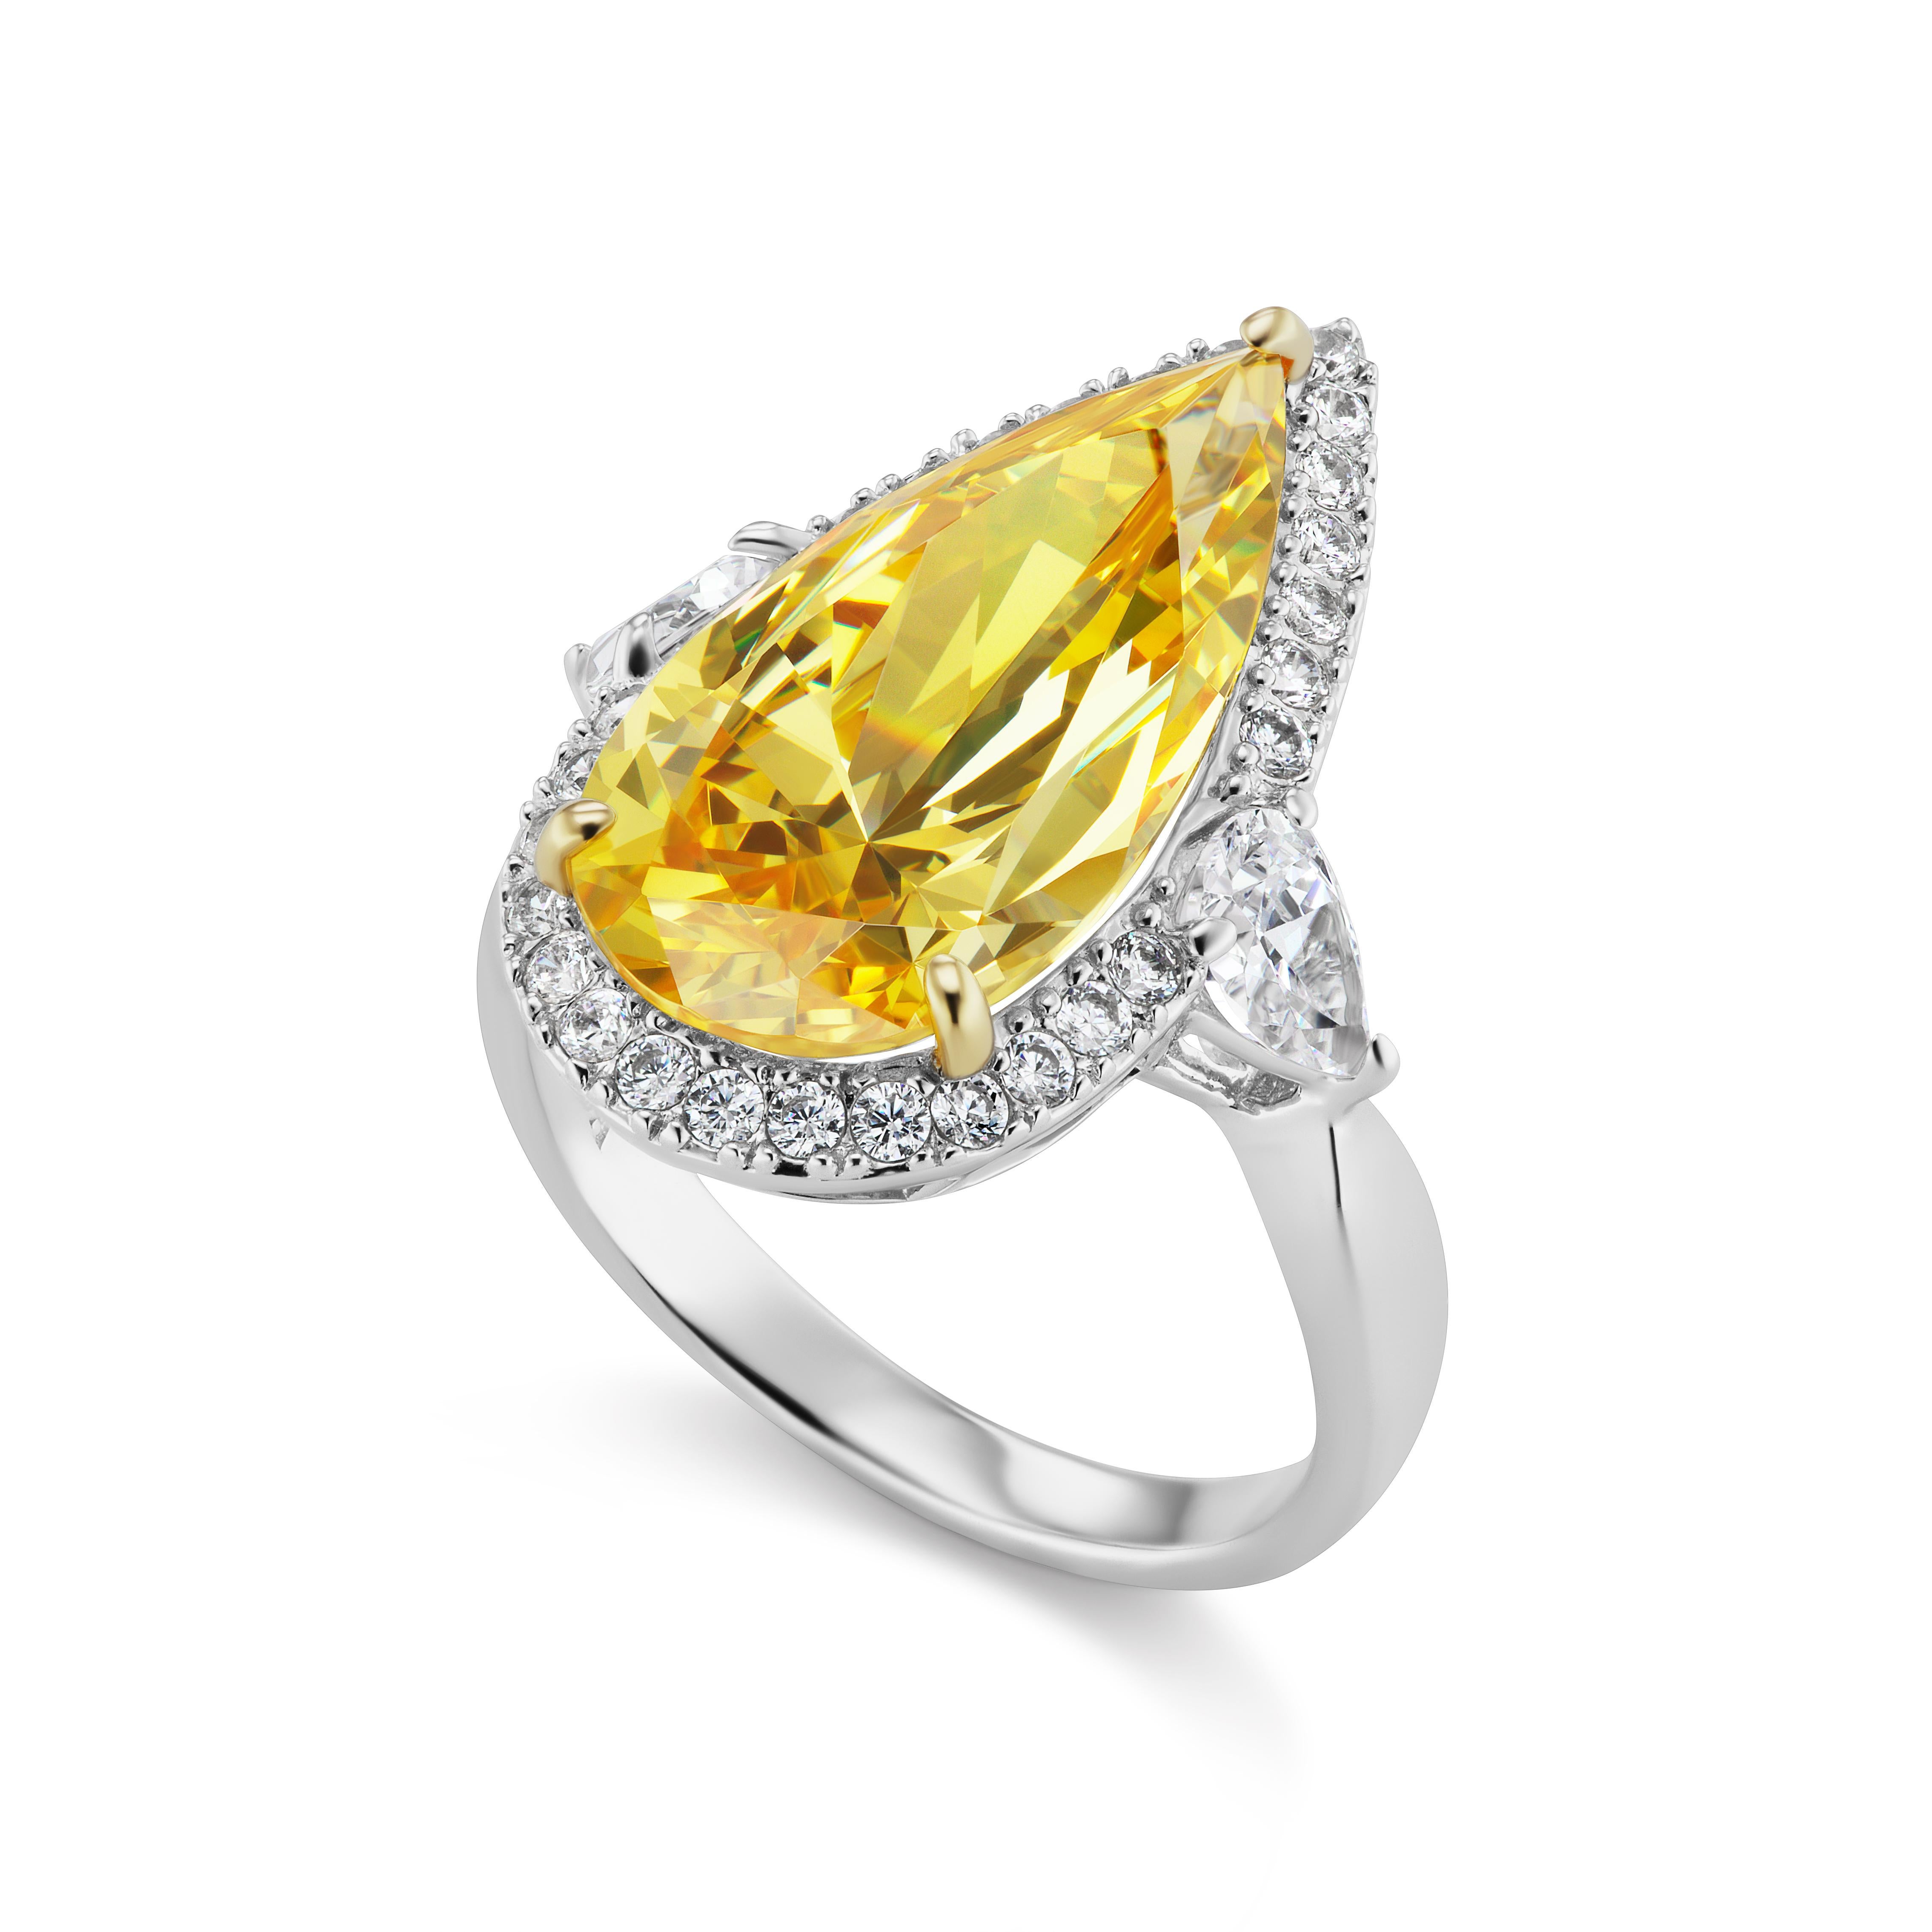 Magnificent Modeschmuck Birne Form Cubic Zirconia Bright Sparkly Canary Yellow Diamond Bordered White CZ Diamond Halo Sterling Ring. Maße: 1 Zoll lang und 3/4 Zoll breit.  Freie Größenbestimmung